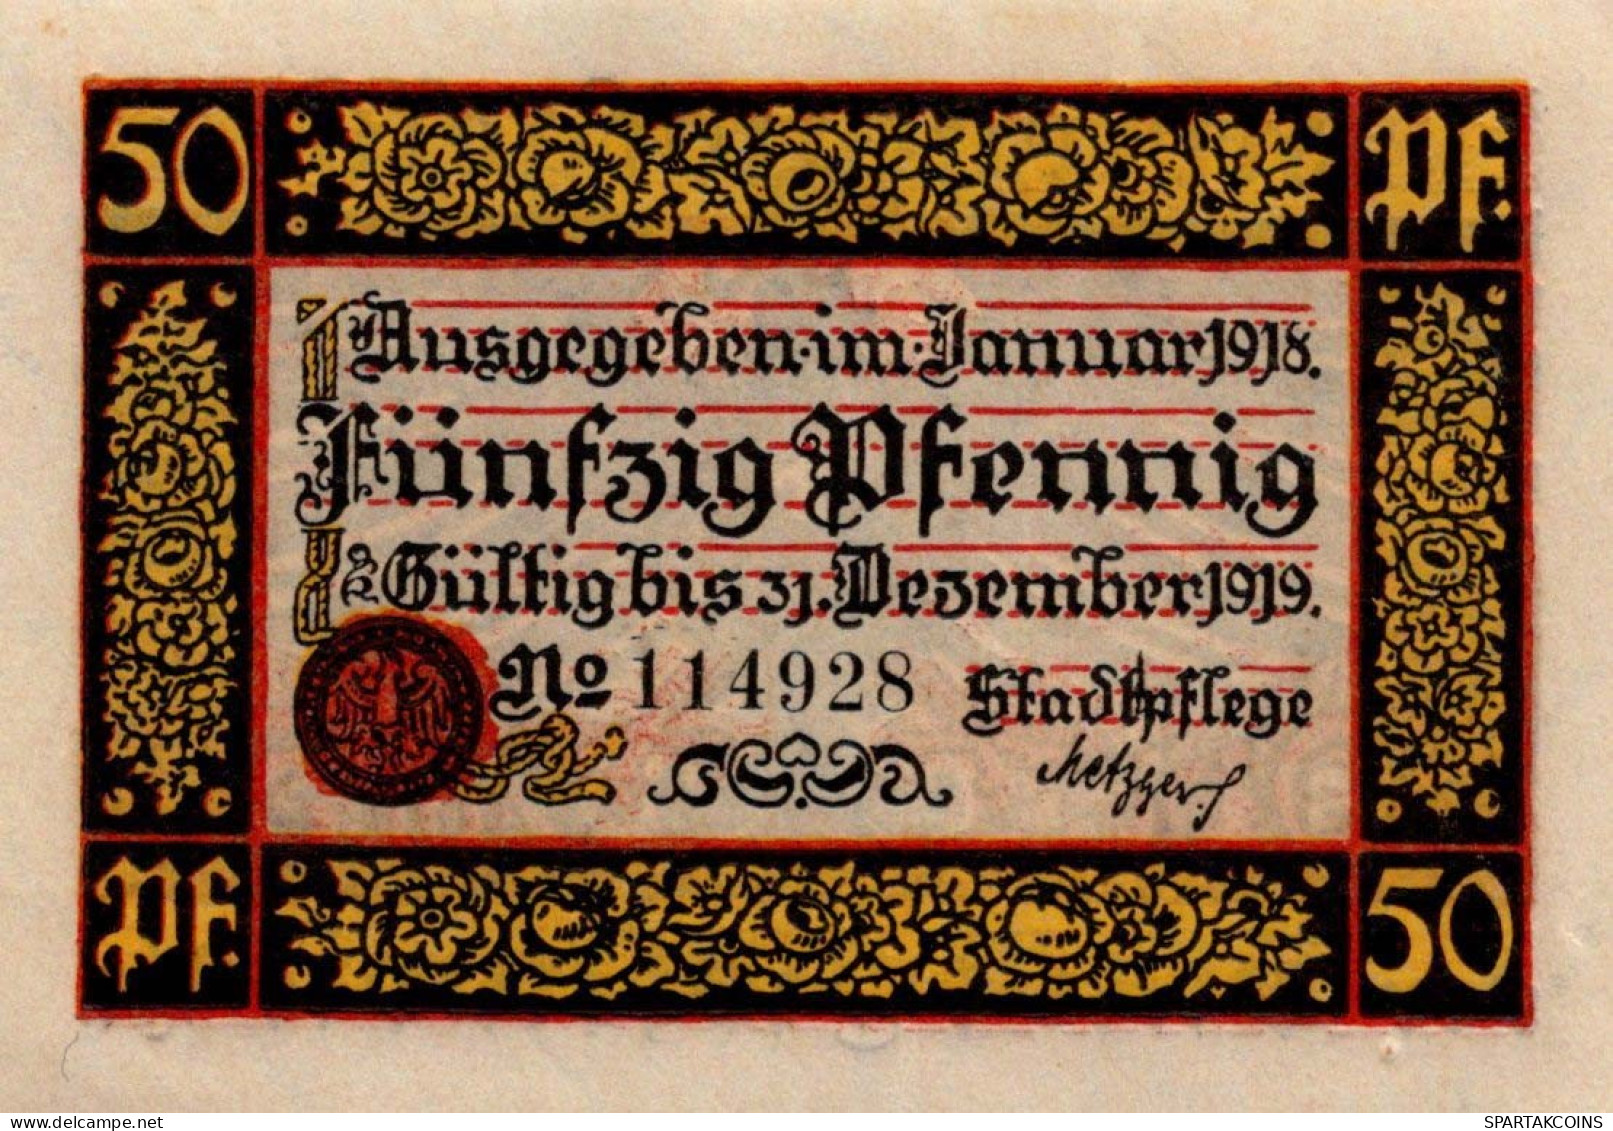 50 PFENNIG 1919 Stadt ROTTWEIL Württemberg UNC DEUTSCHLAND Notgeld #PH590 - [11] Local Banknote Issues